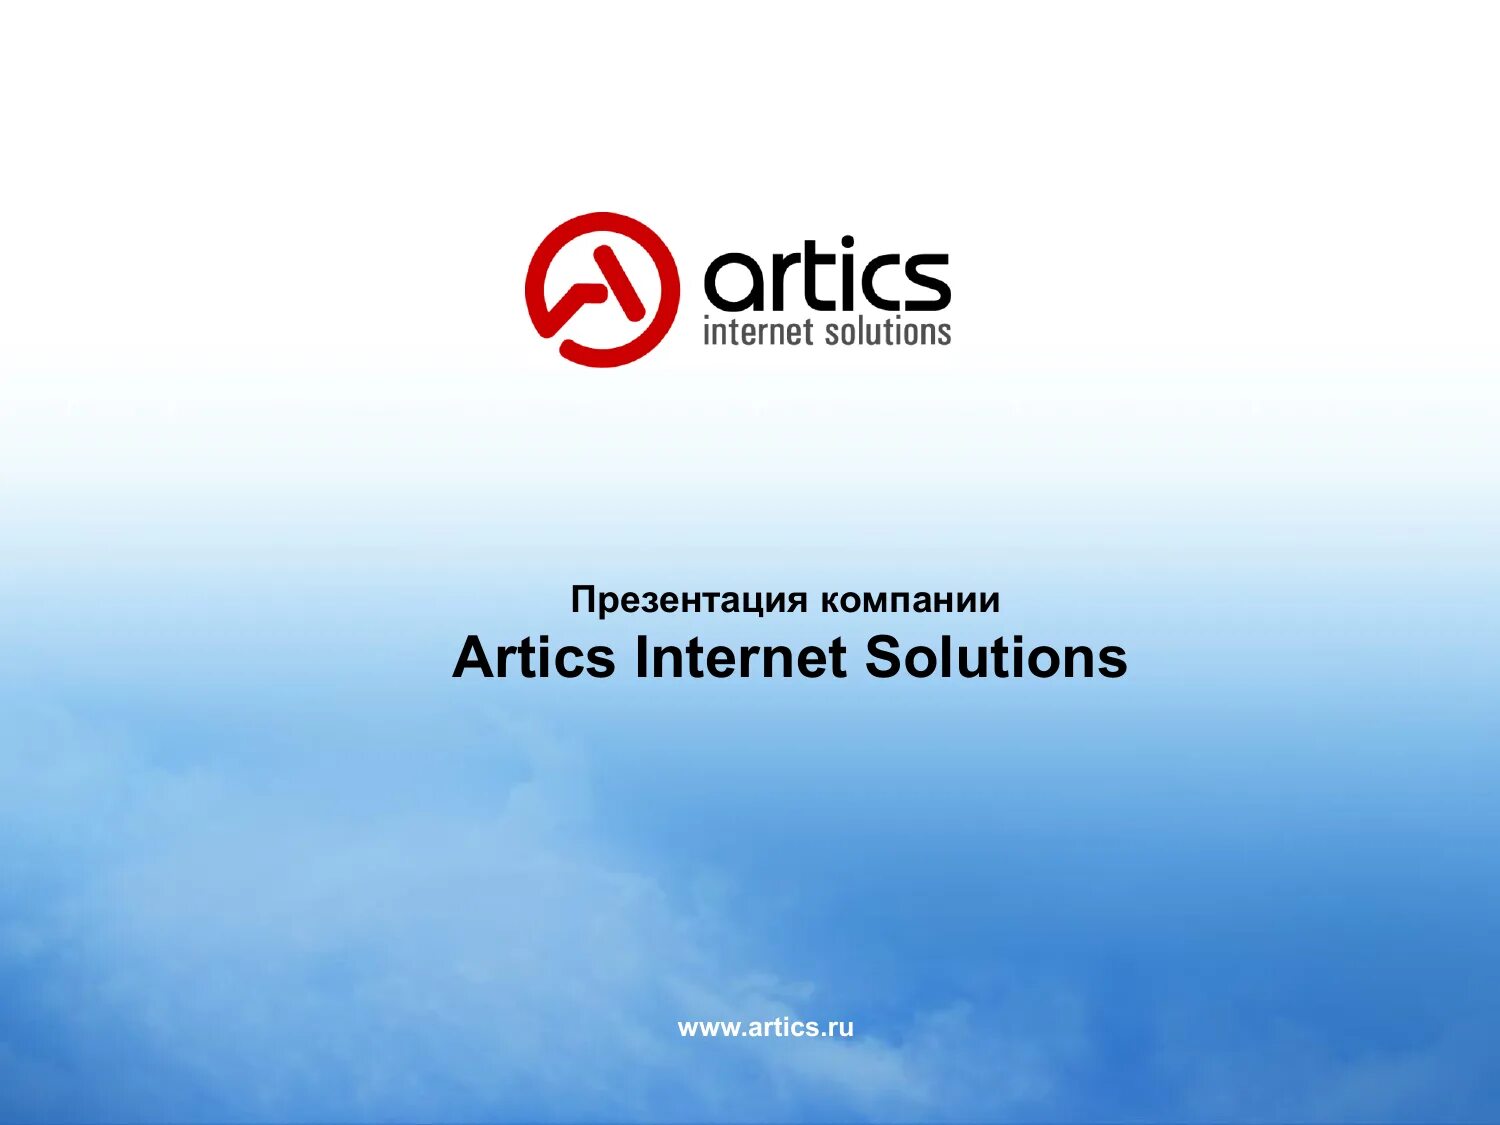 Internet solution. Artics Internet solutions. Artics Internet solutions рекламное агентство. Artics Internet solutions логотип. Artics Internet solutions офис.